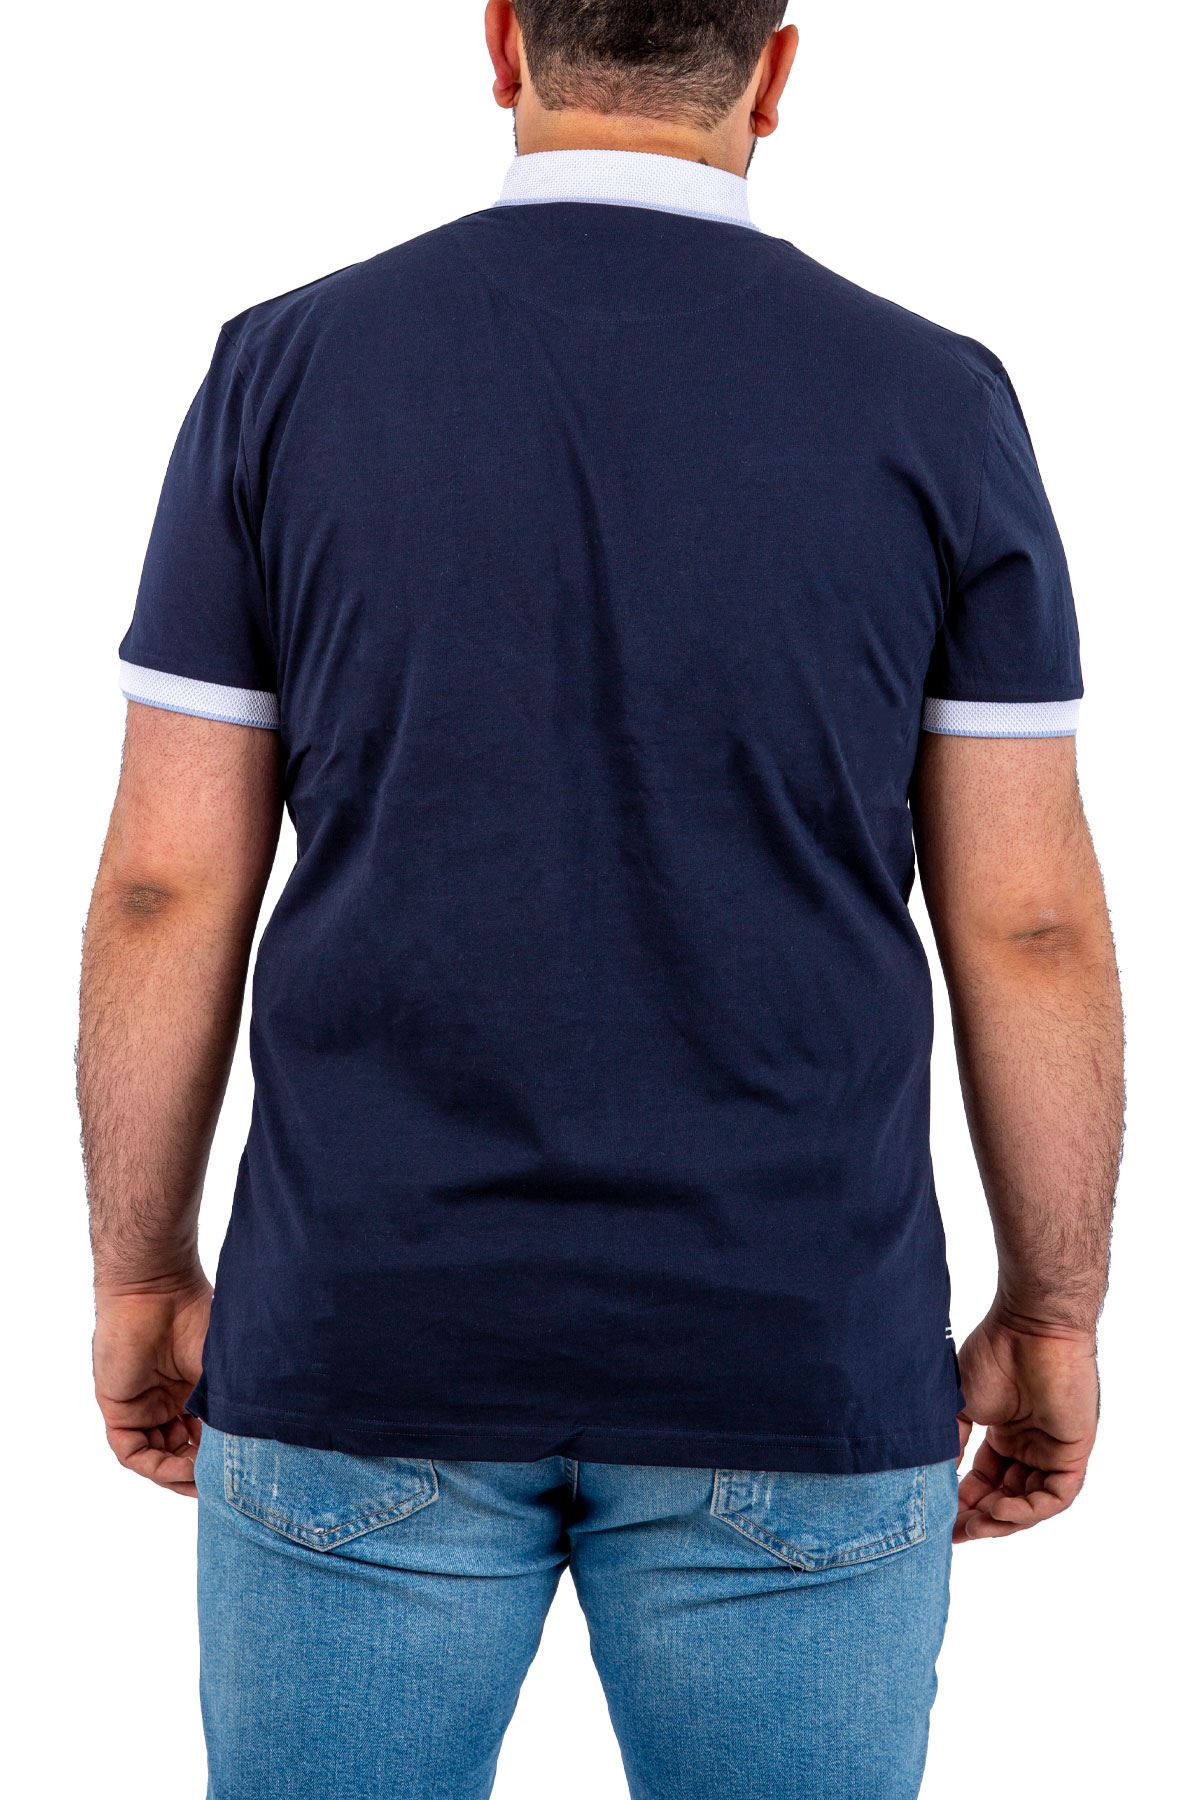 MISHMASH Büyük Beden Aralığı Lacivert Yarım Fermuarlı Polo Yaka Erkek T-shirt